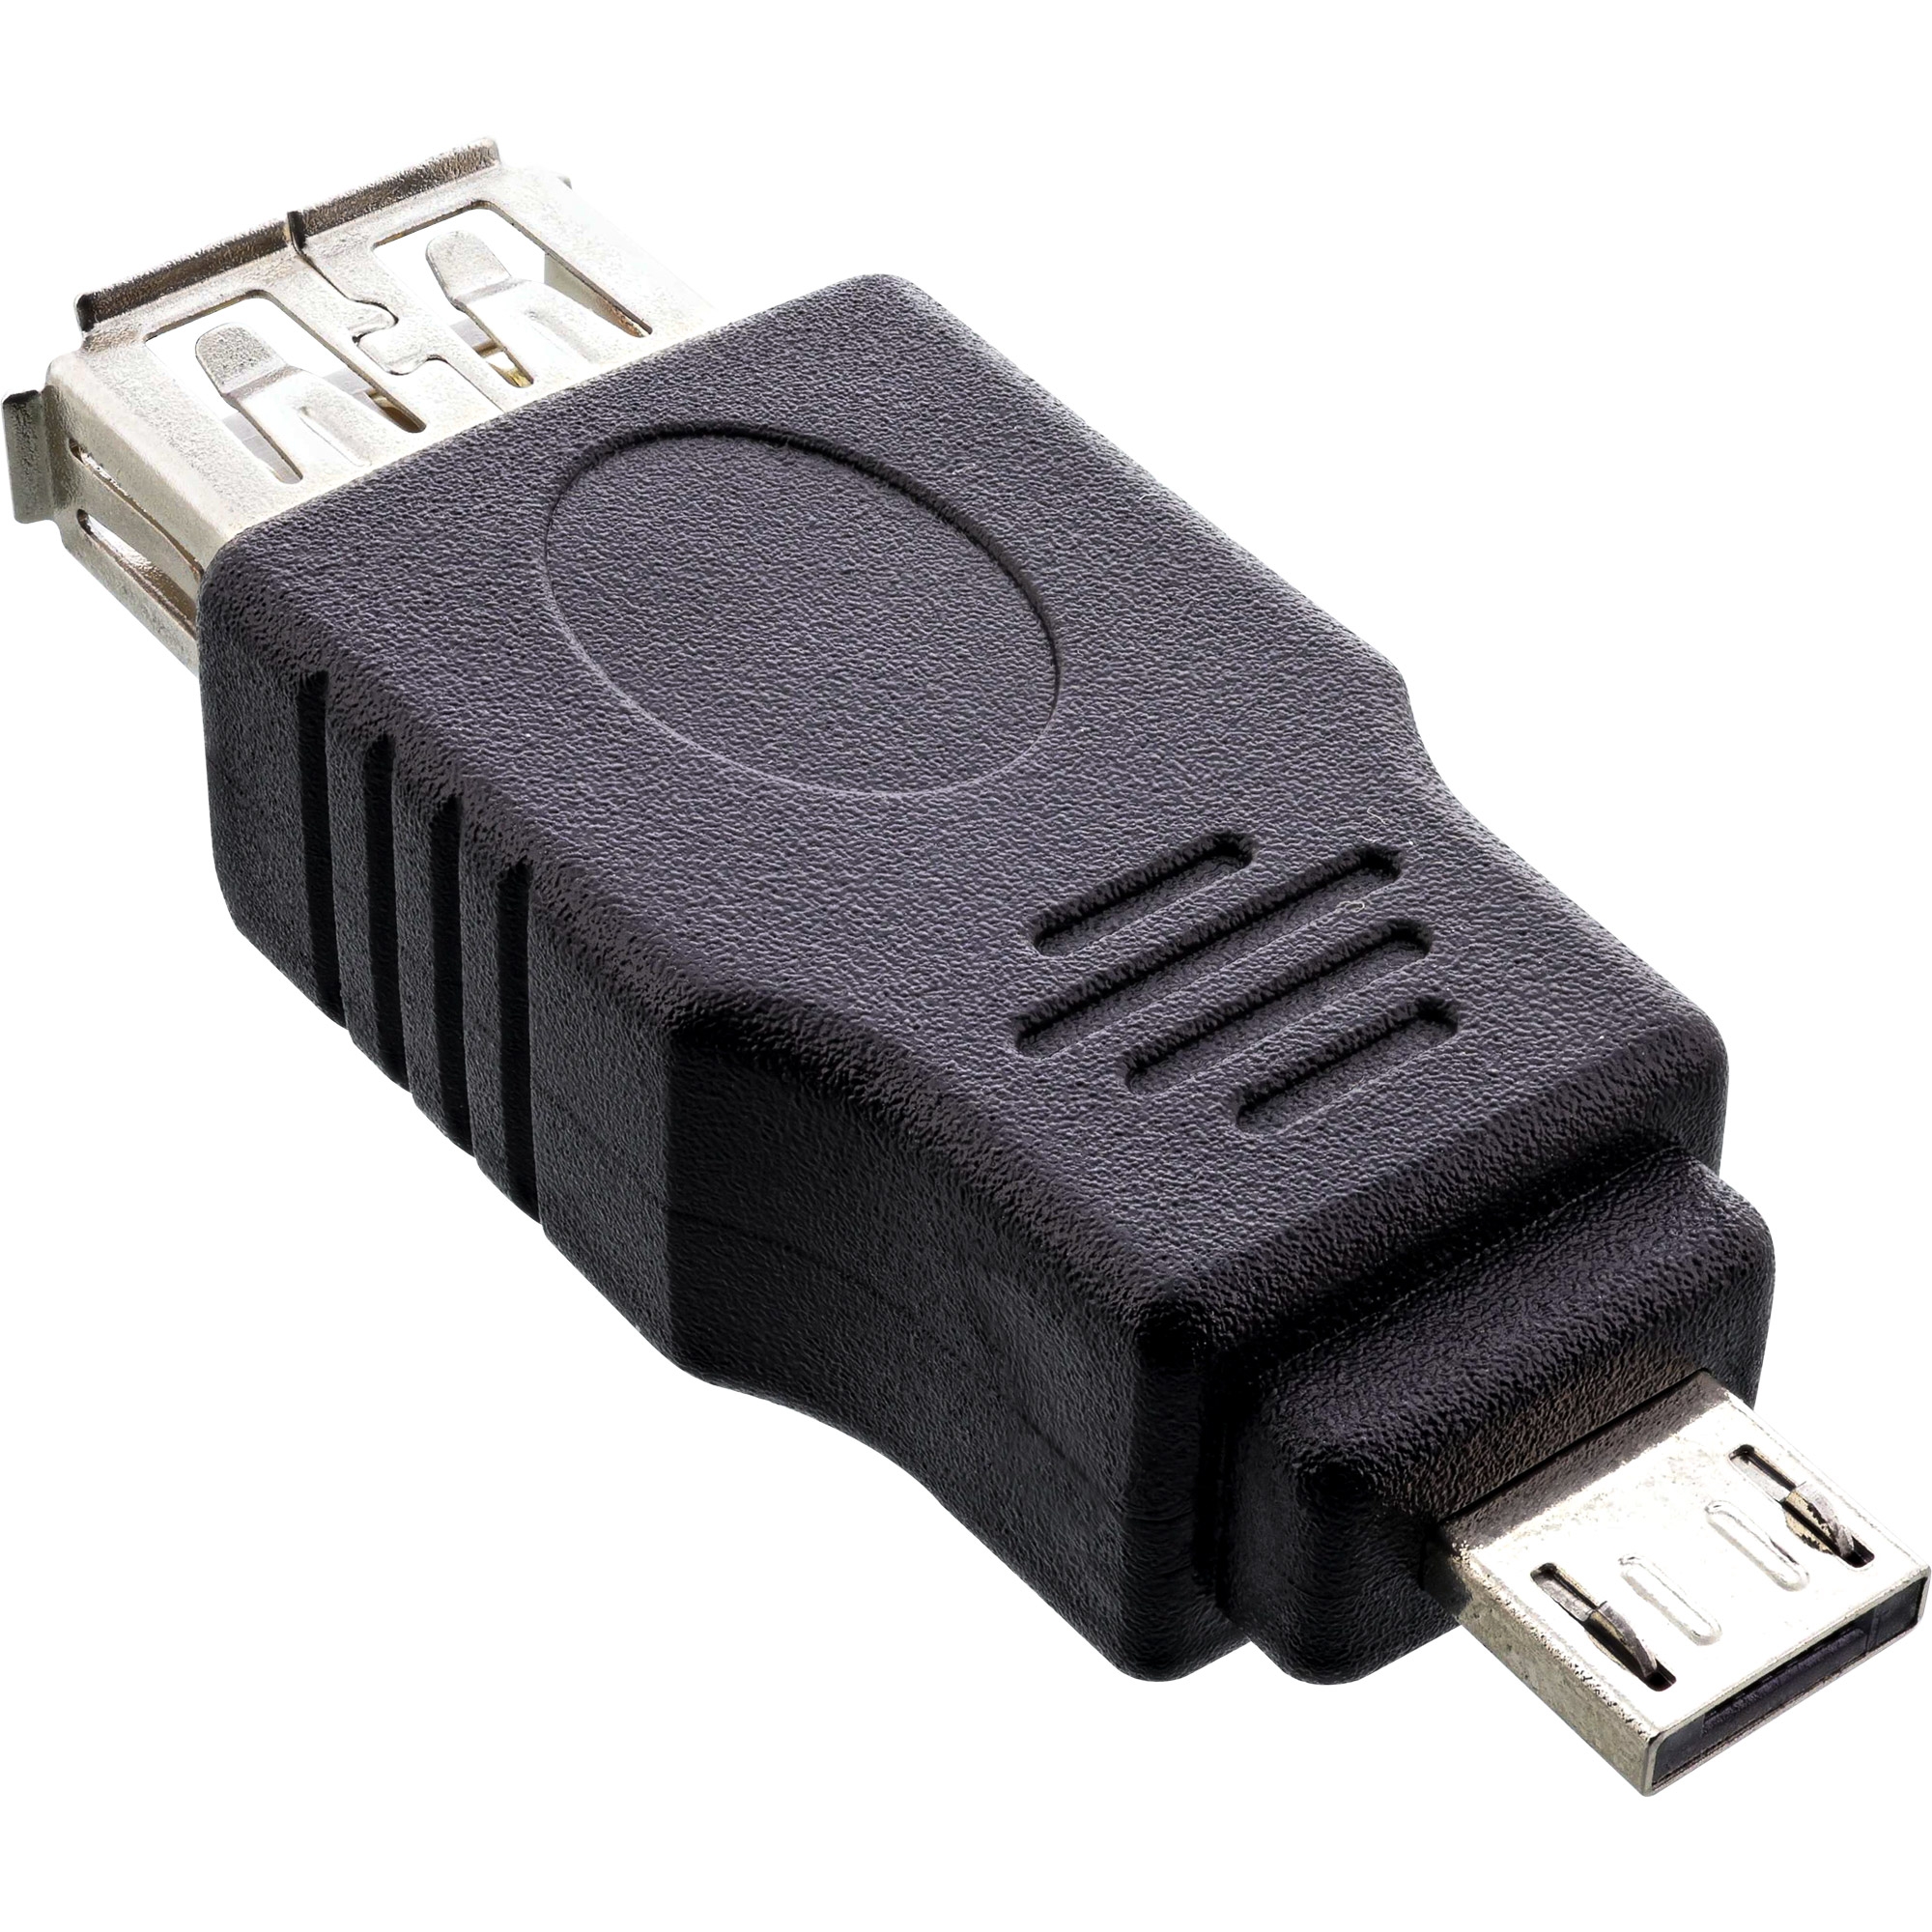 InLine® USB 3.2 Gen.2 Adapterkabel Buchse C auf Einbaubuchse C 0,2m